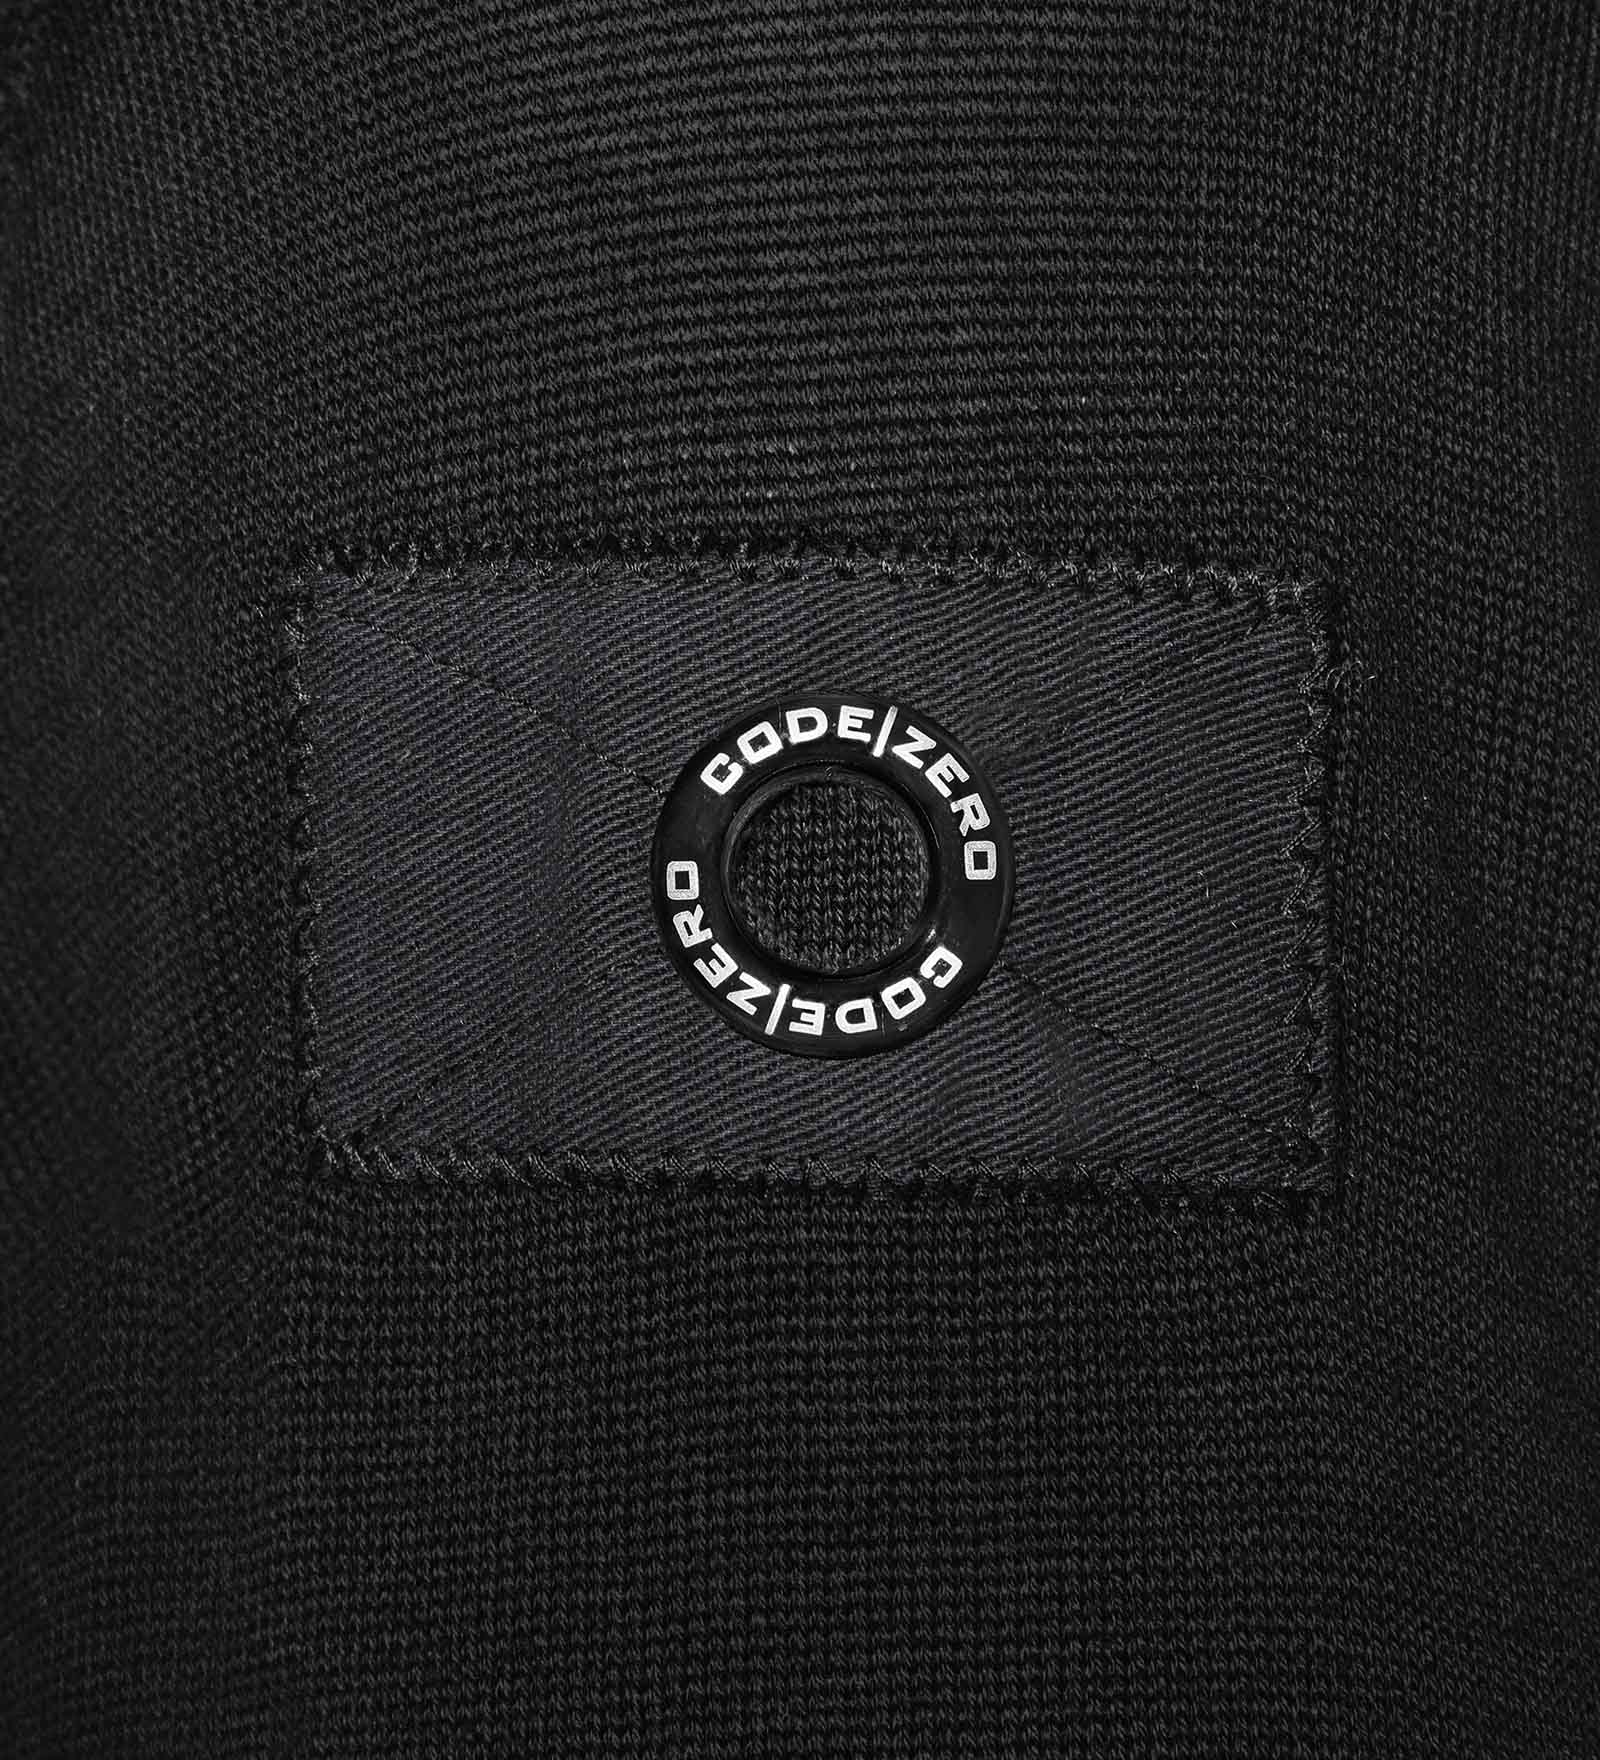 Details of a black jumper